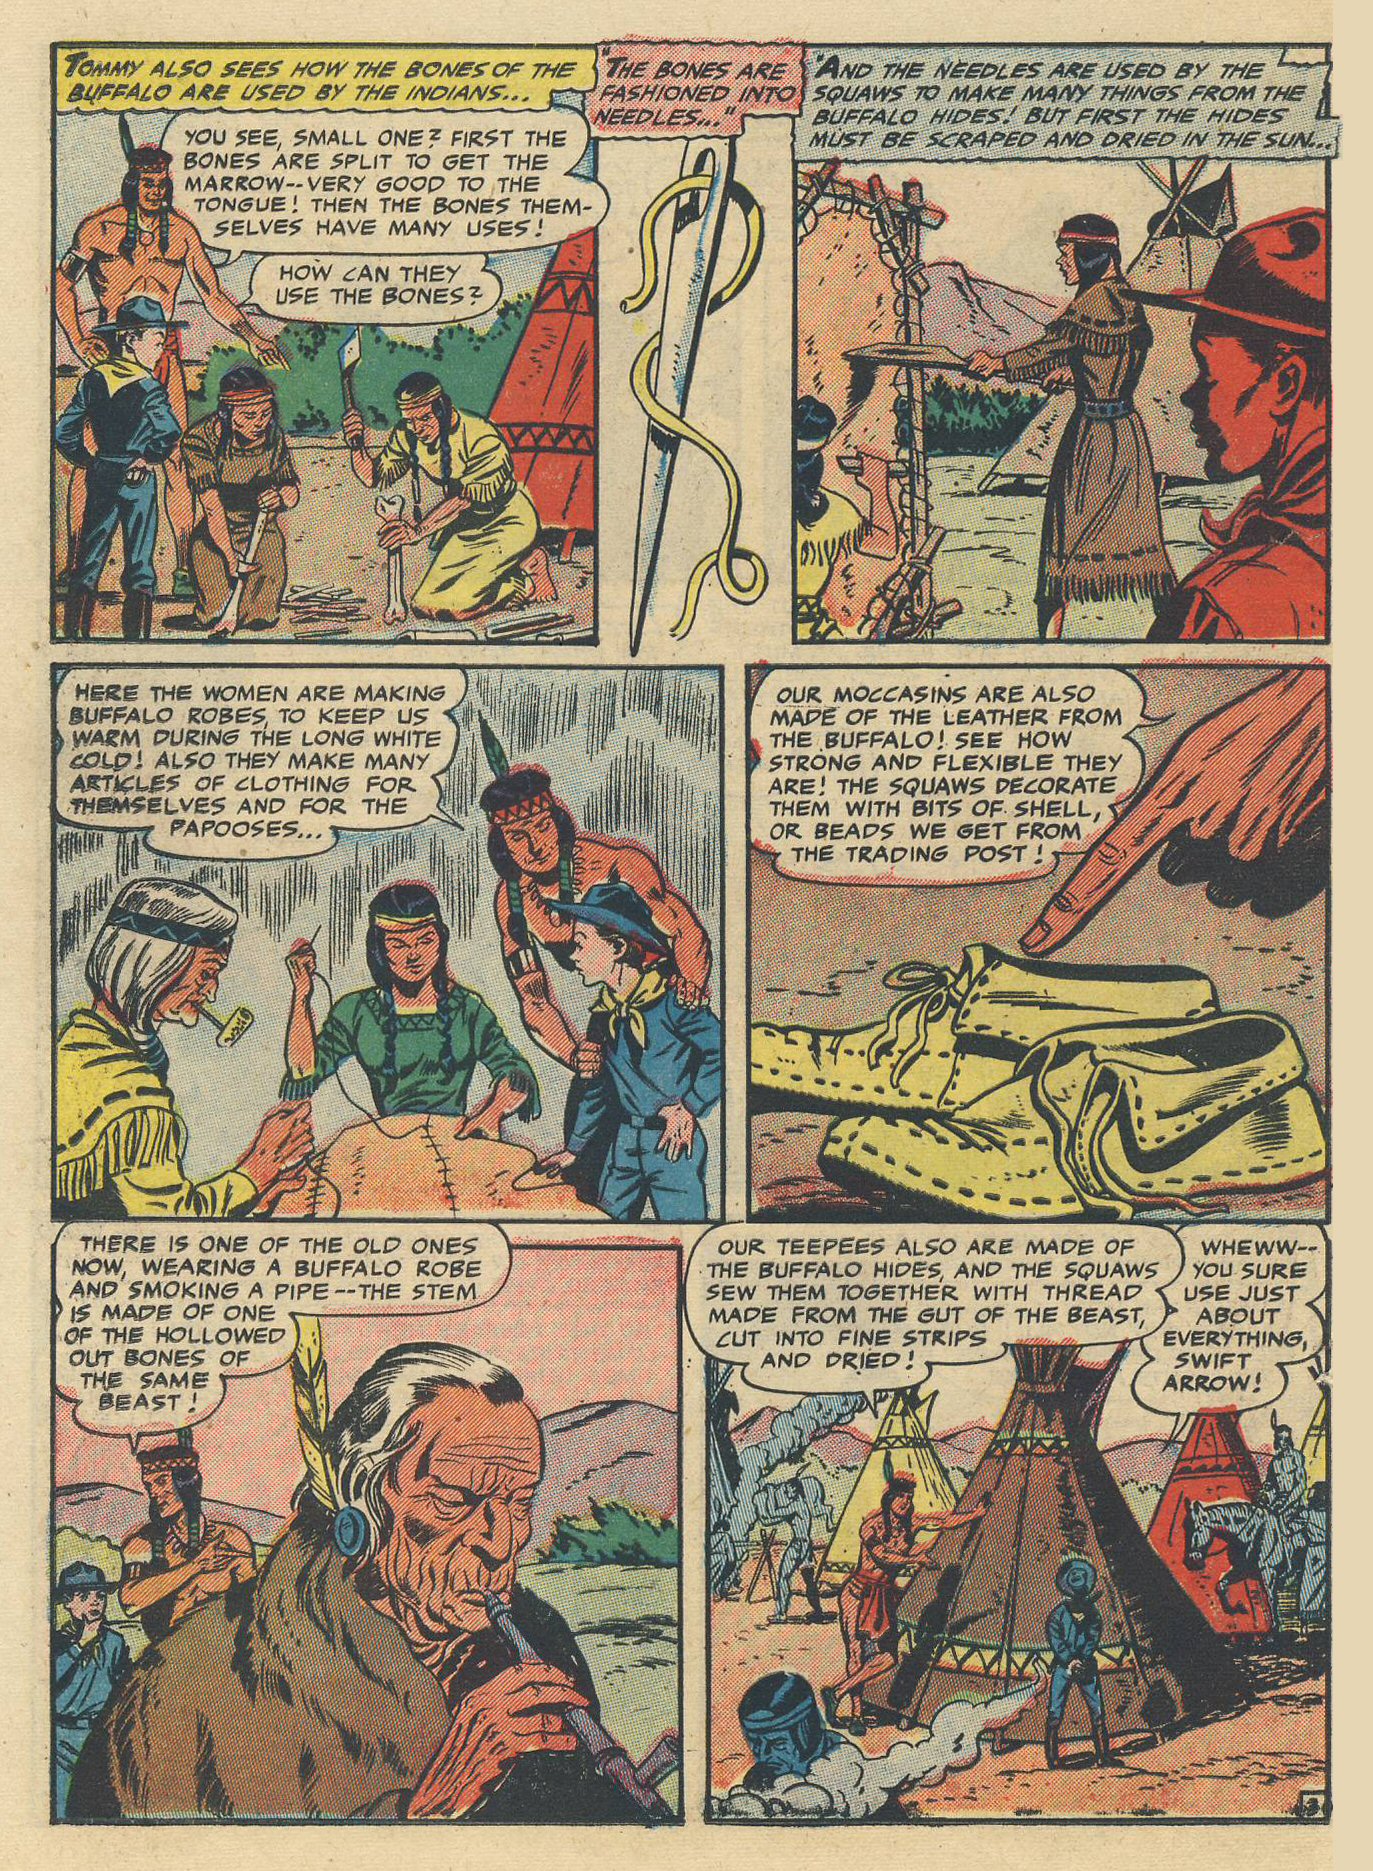 Read online Swift Arrow (1954) comic -  Issue #5 - 24